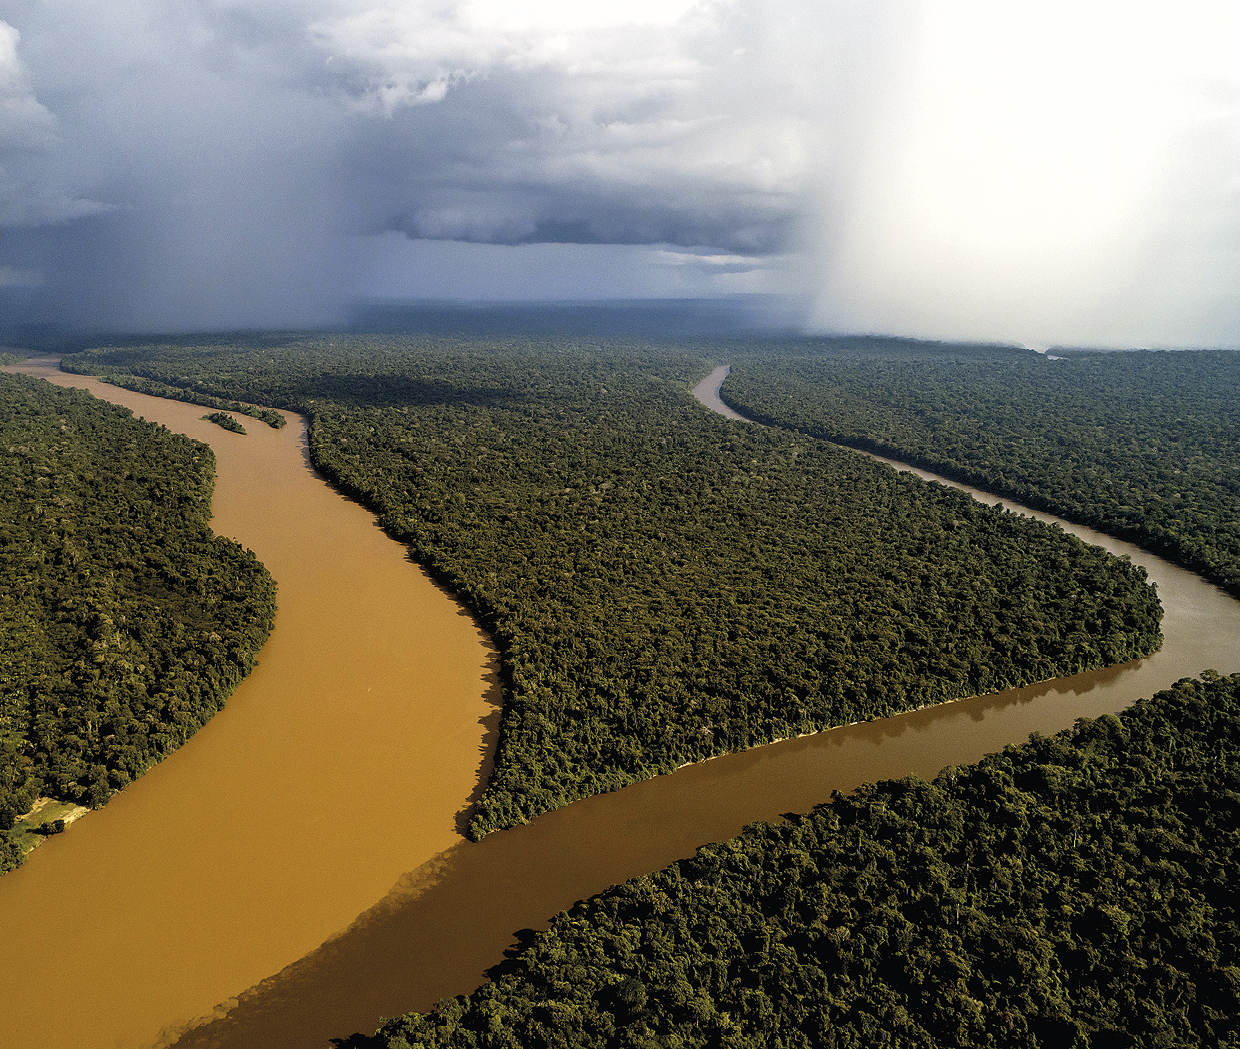 Fotografia. Vista do encontro de dois rios em uma planície coberta por vegetação densa e verde. A água do rio à esquerda é turva e marrom claro. Já o rio à direita é escuro. Ao fundo, grandes nuvens cinzas no céu e ocorrência de chuva em dois pontos.